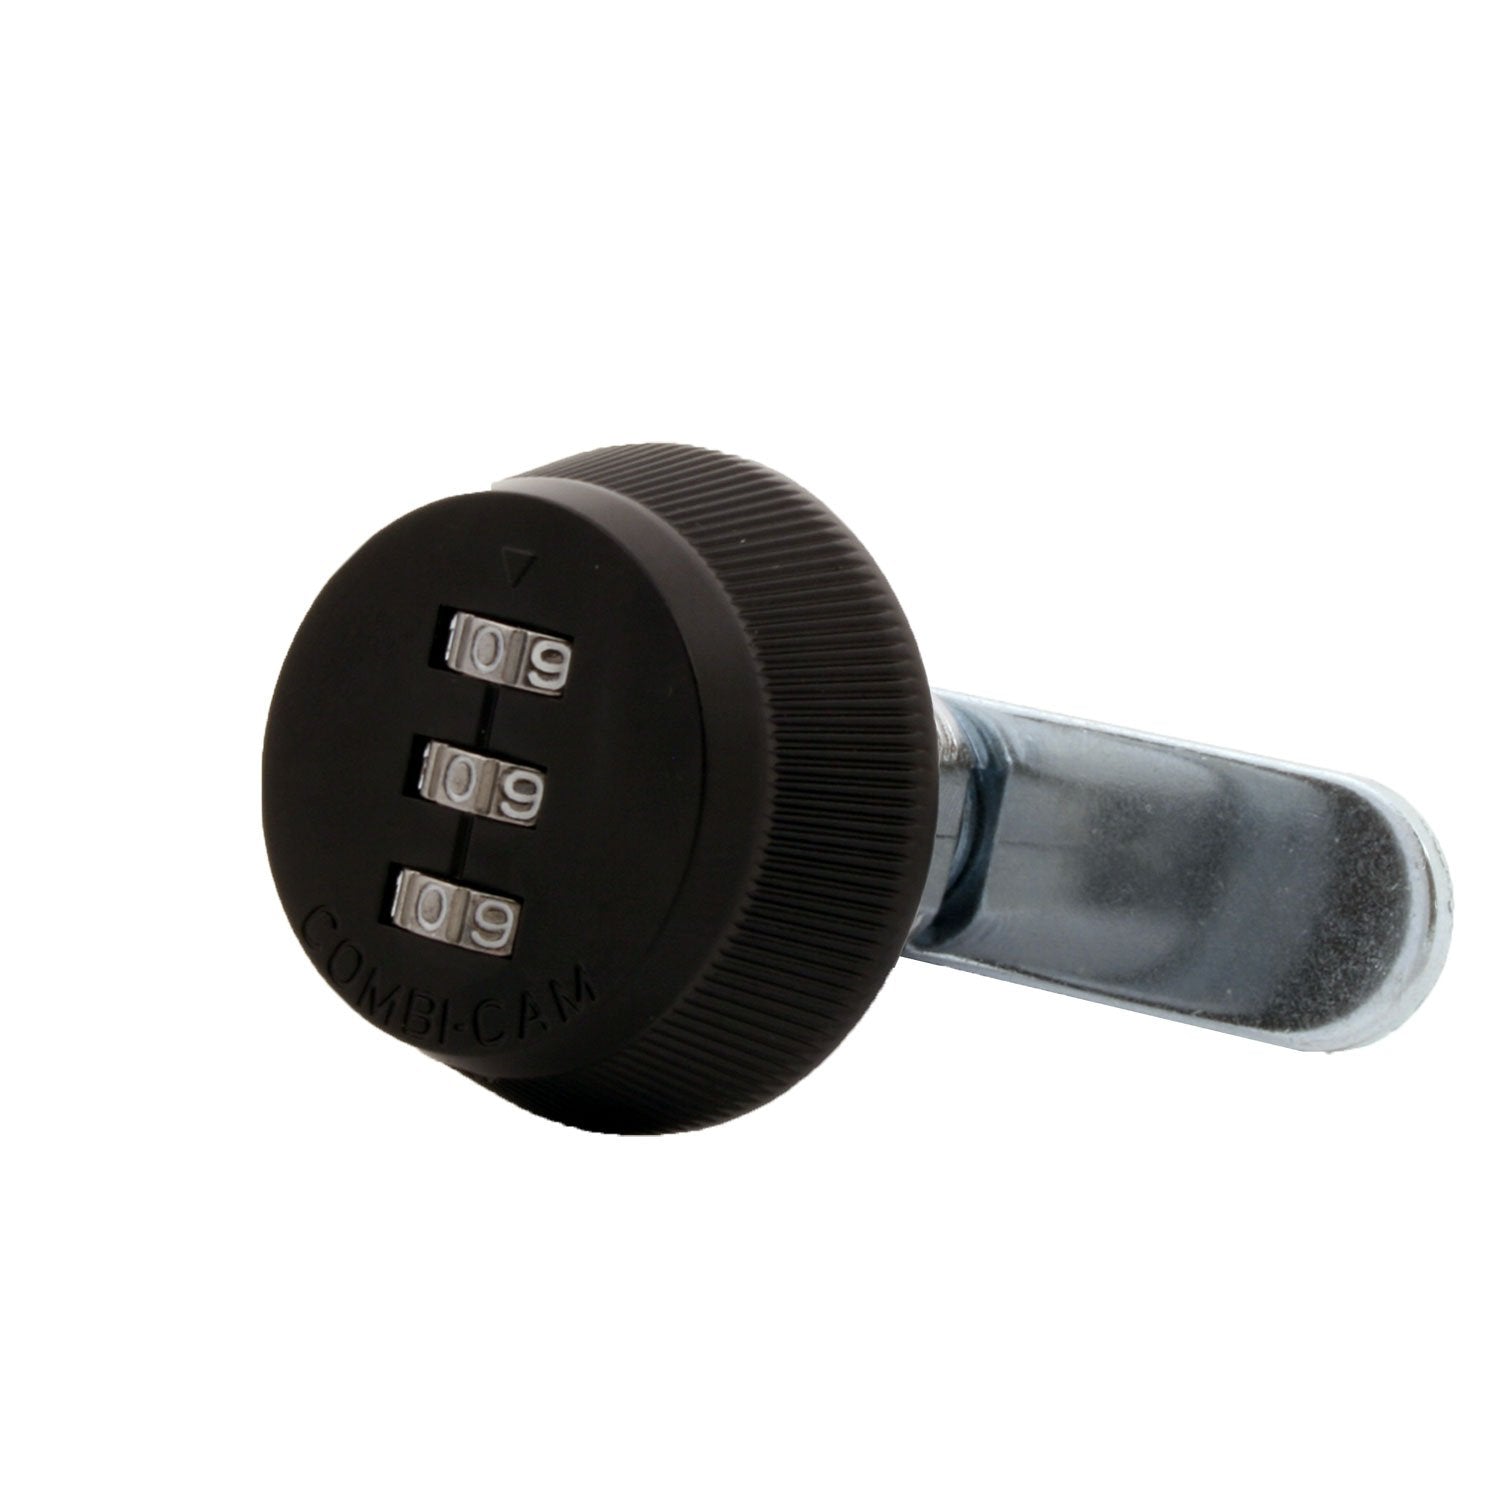 Combi-Cam 7850R-S-Black Combination Cam Lock, 5/8" Black Finish